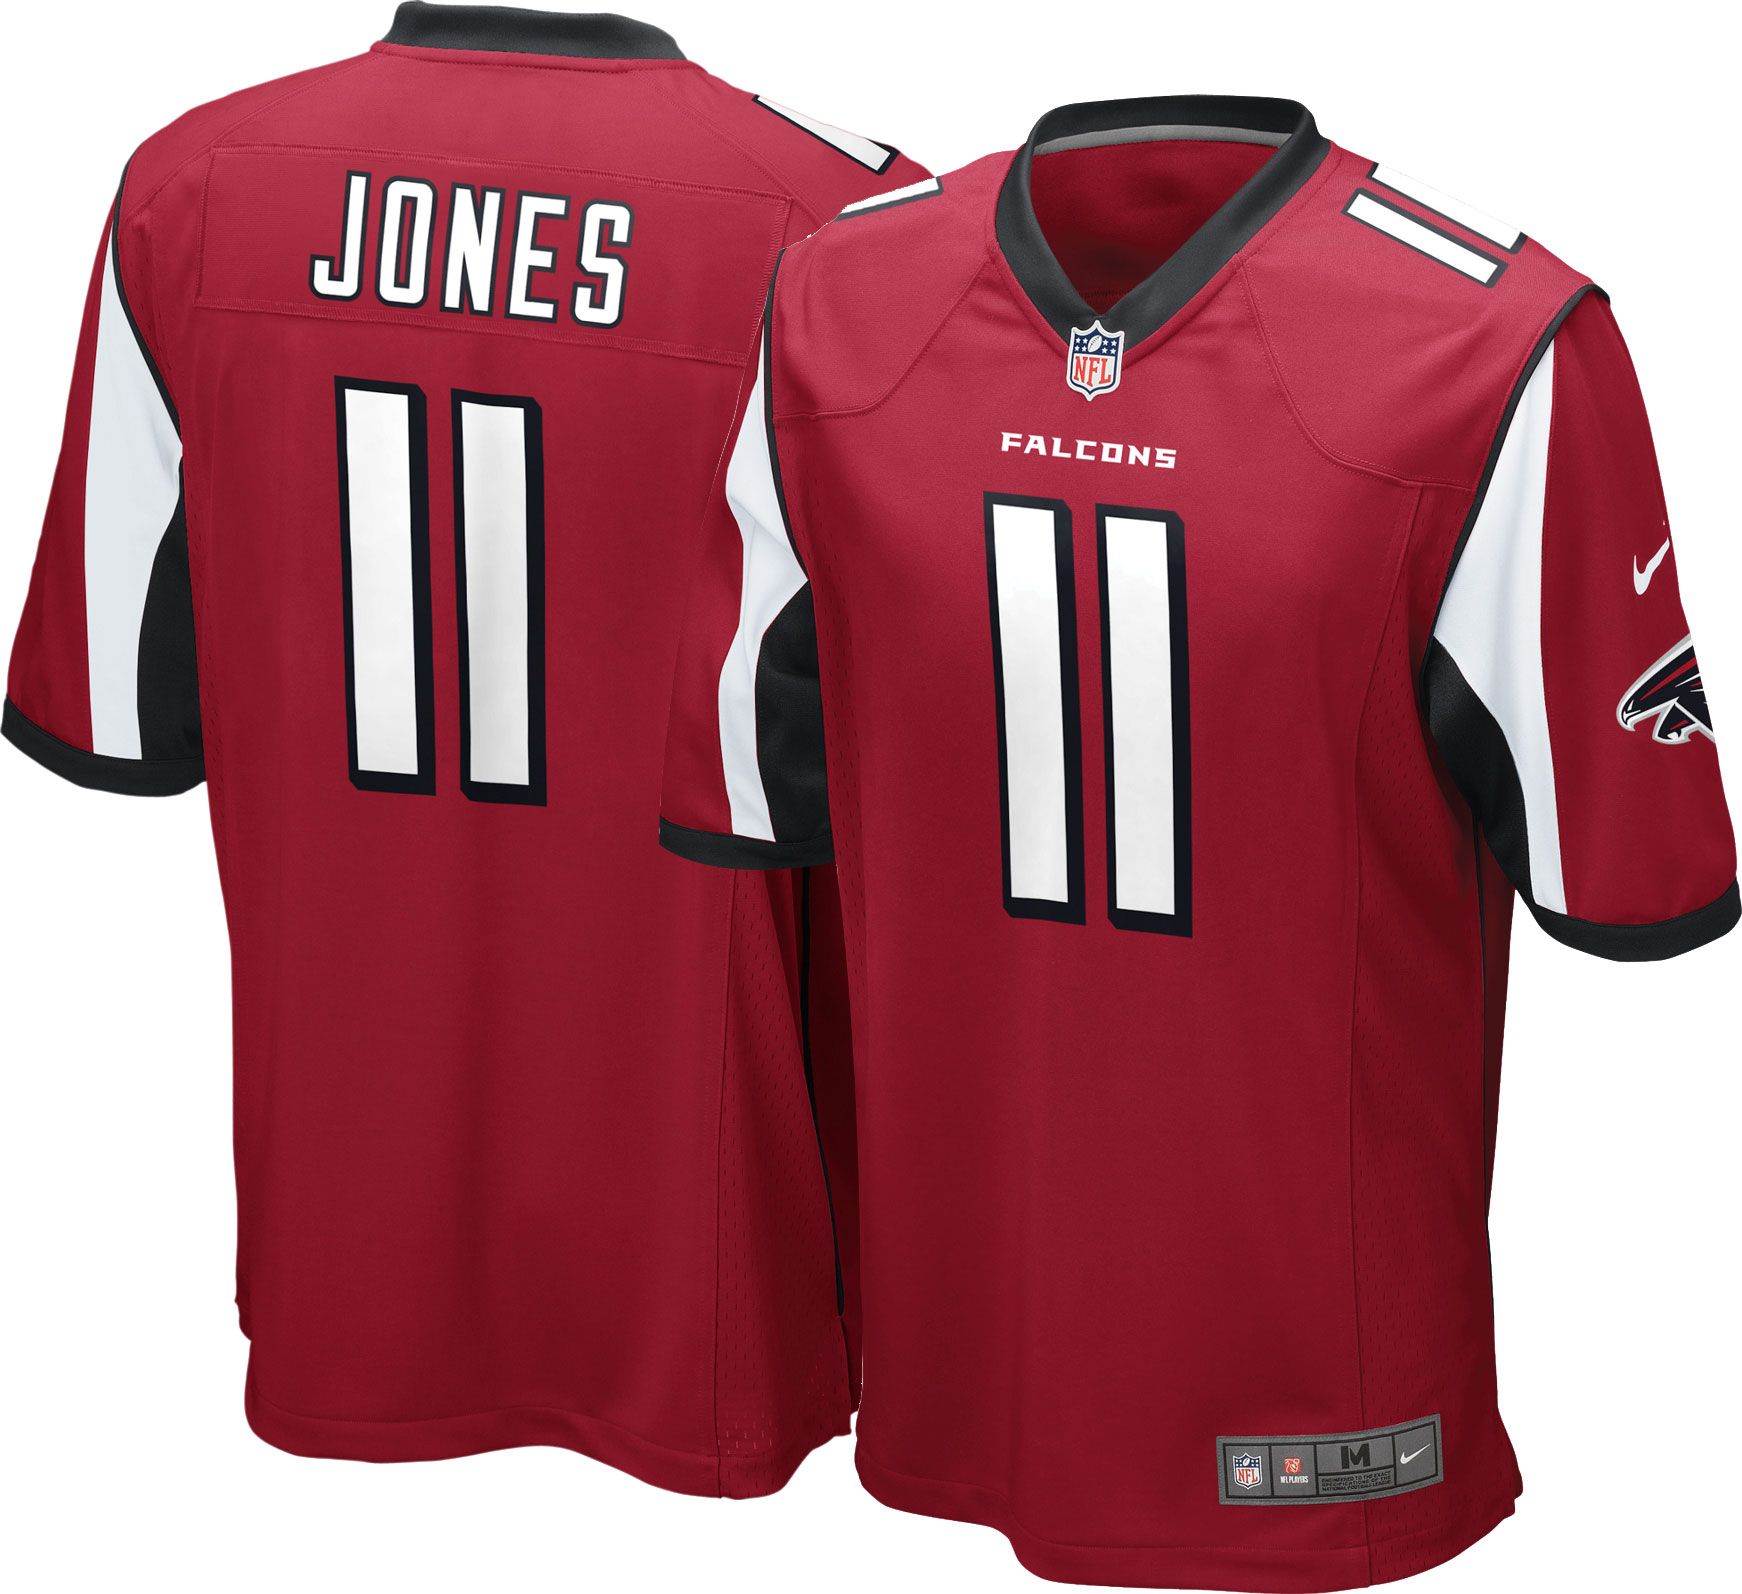 julio jones stitched jersey | www 